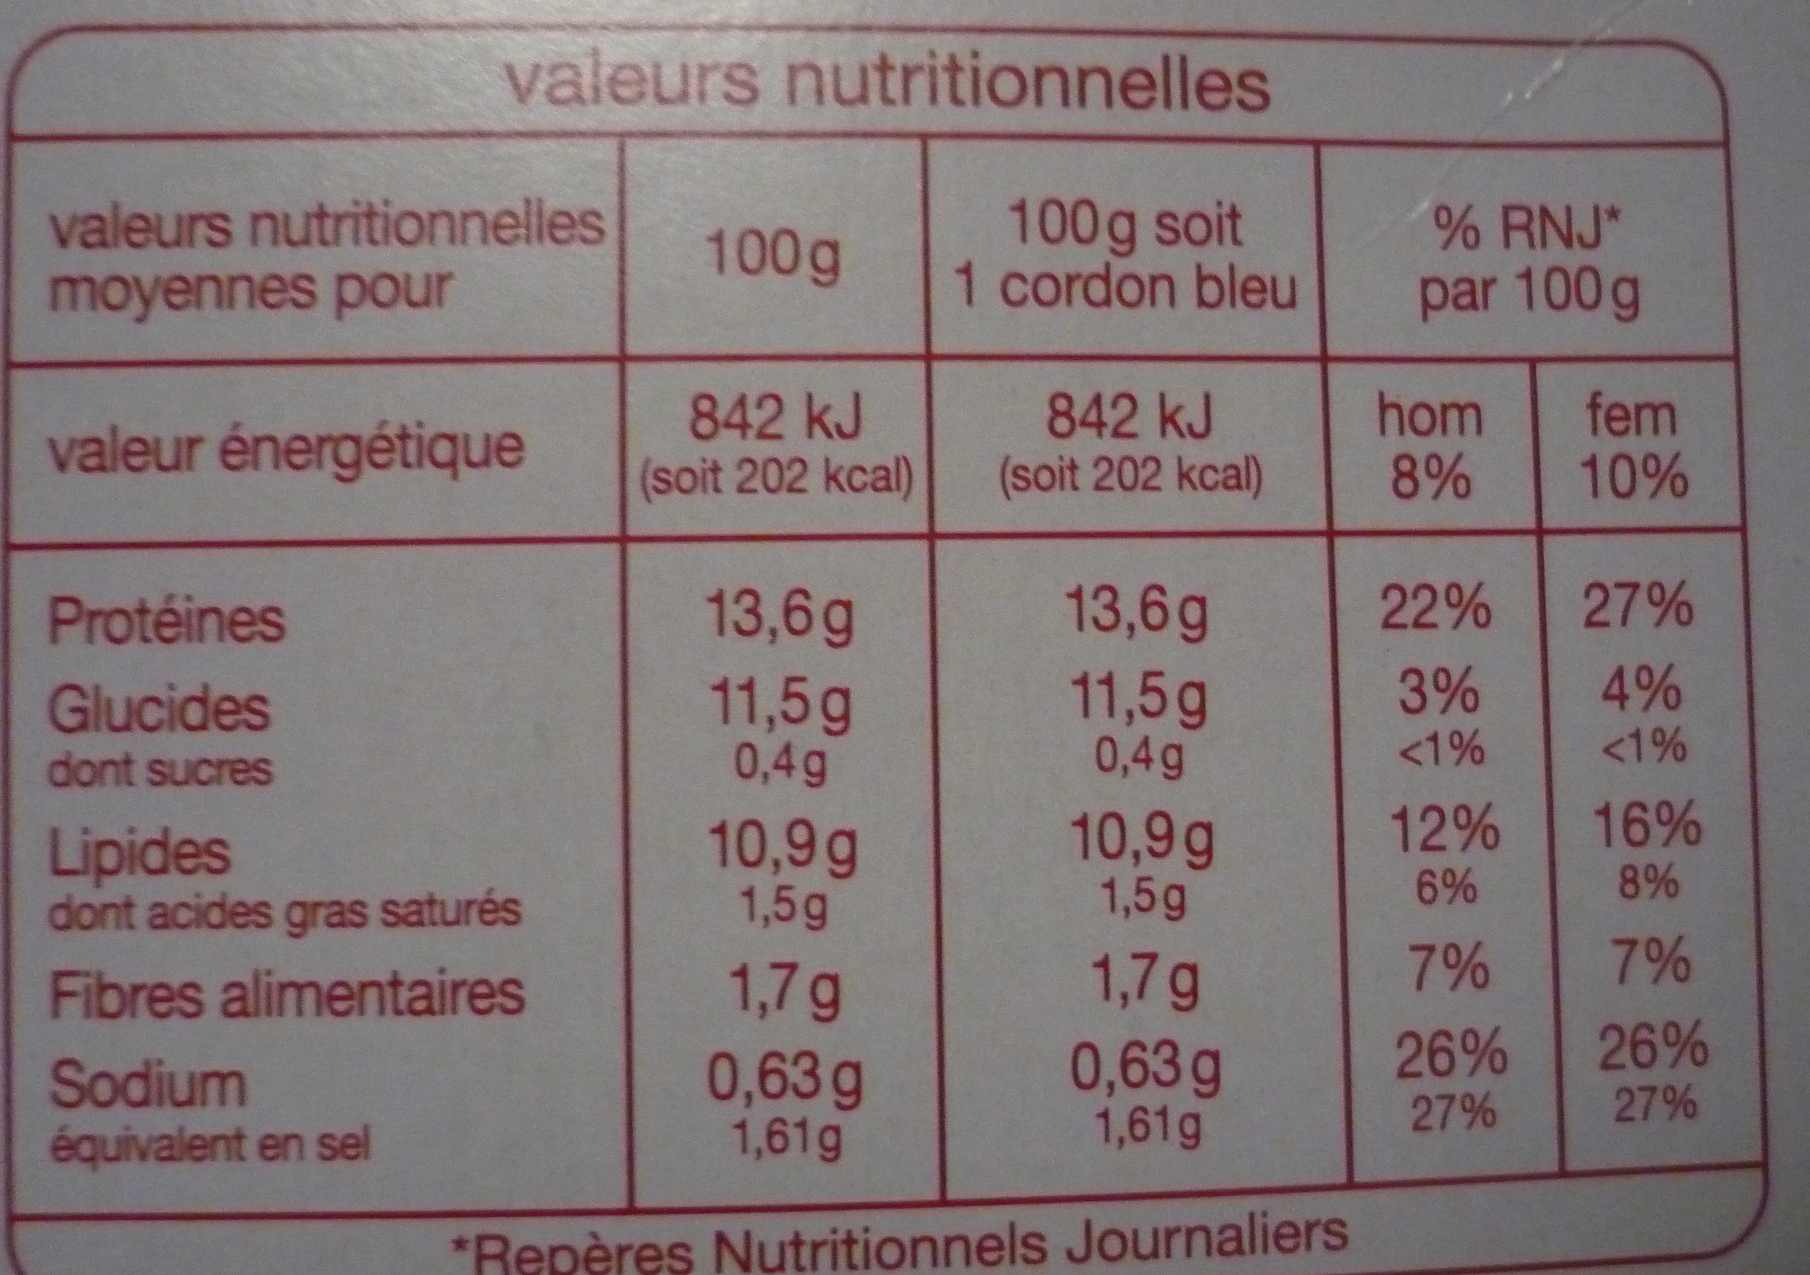 Cordons bleus filet de poulet - Informations nutritionnelles - fr